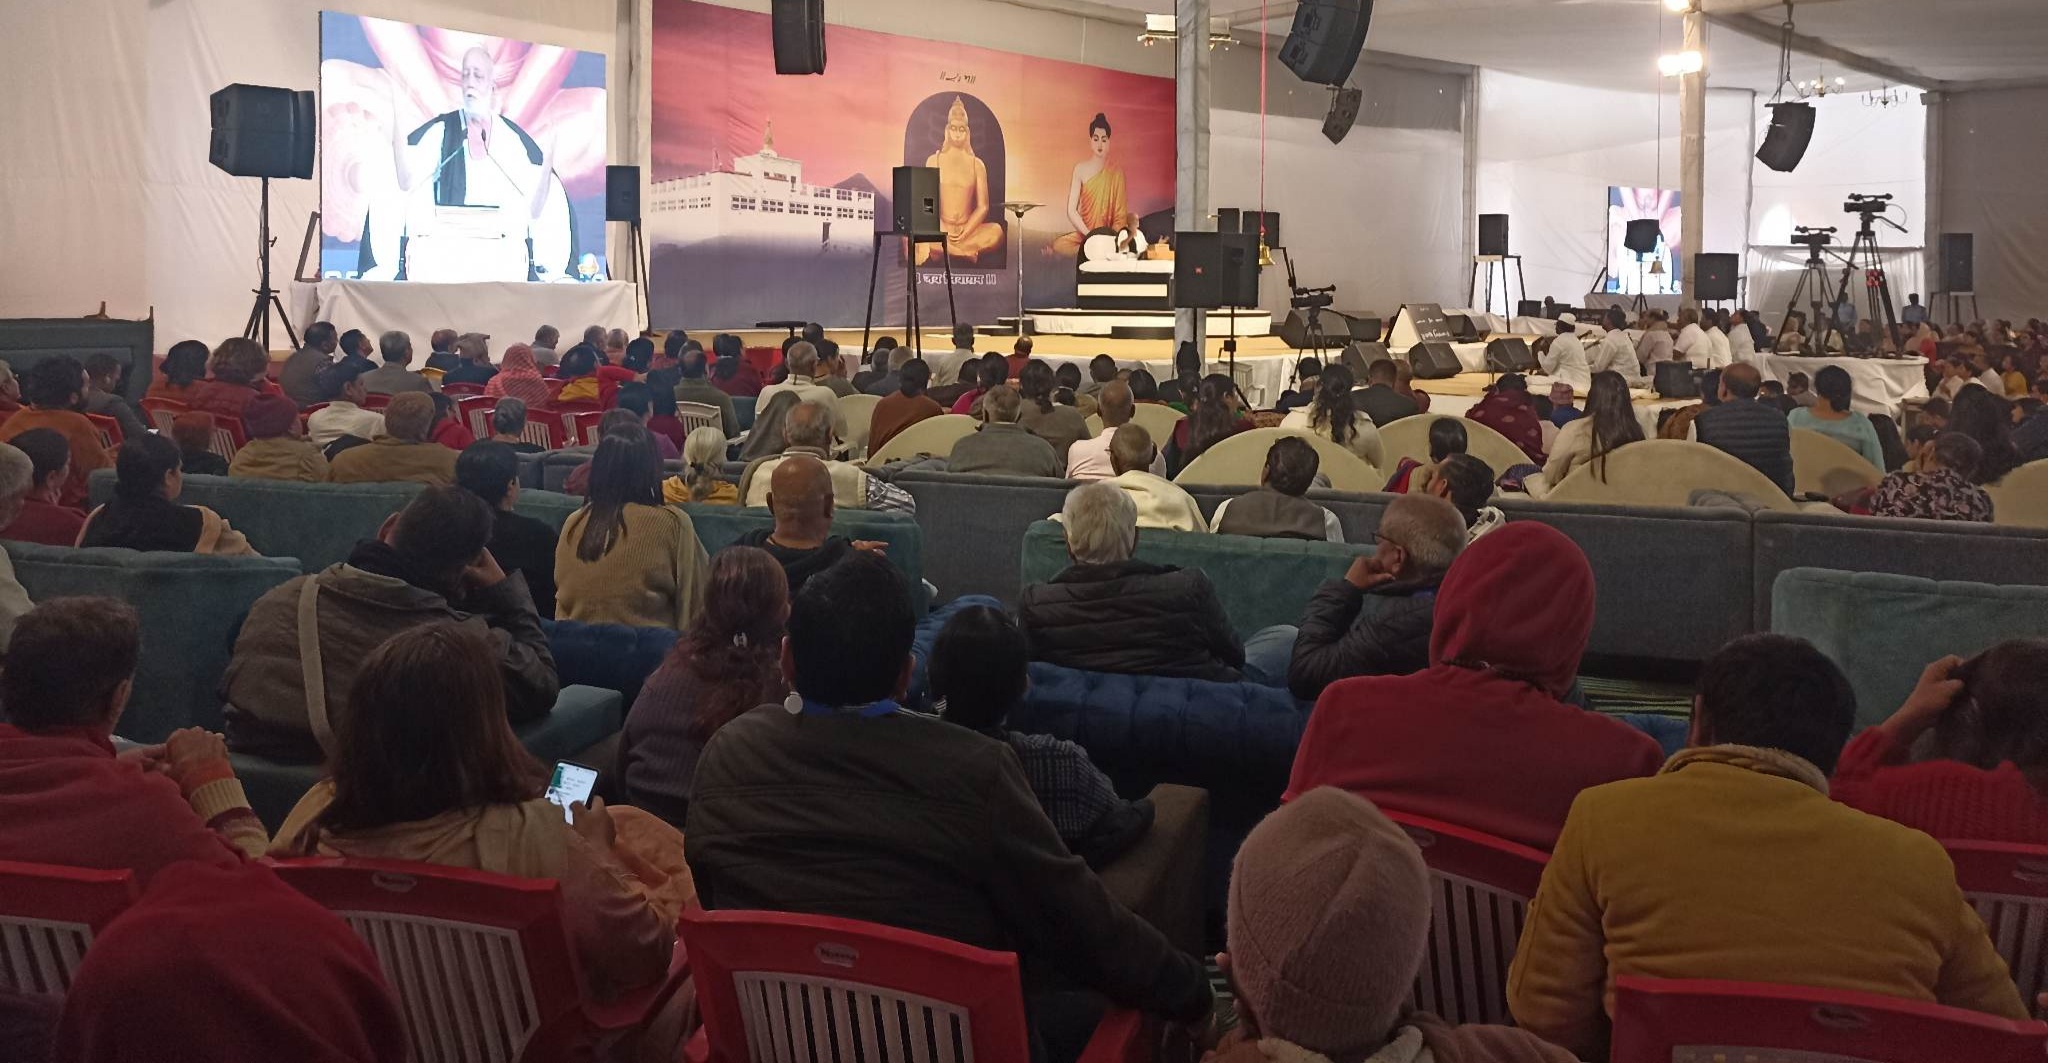 लुम्बिनीमा मोरारी वापूको कथा वाचन विवाद साम्य, चार बुँदे सहमतीसँगै वाचन शुरु